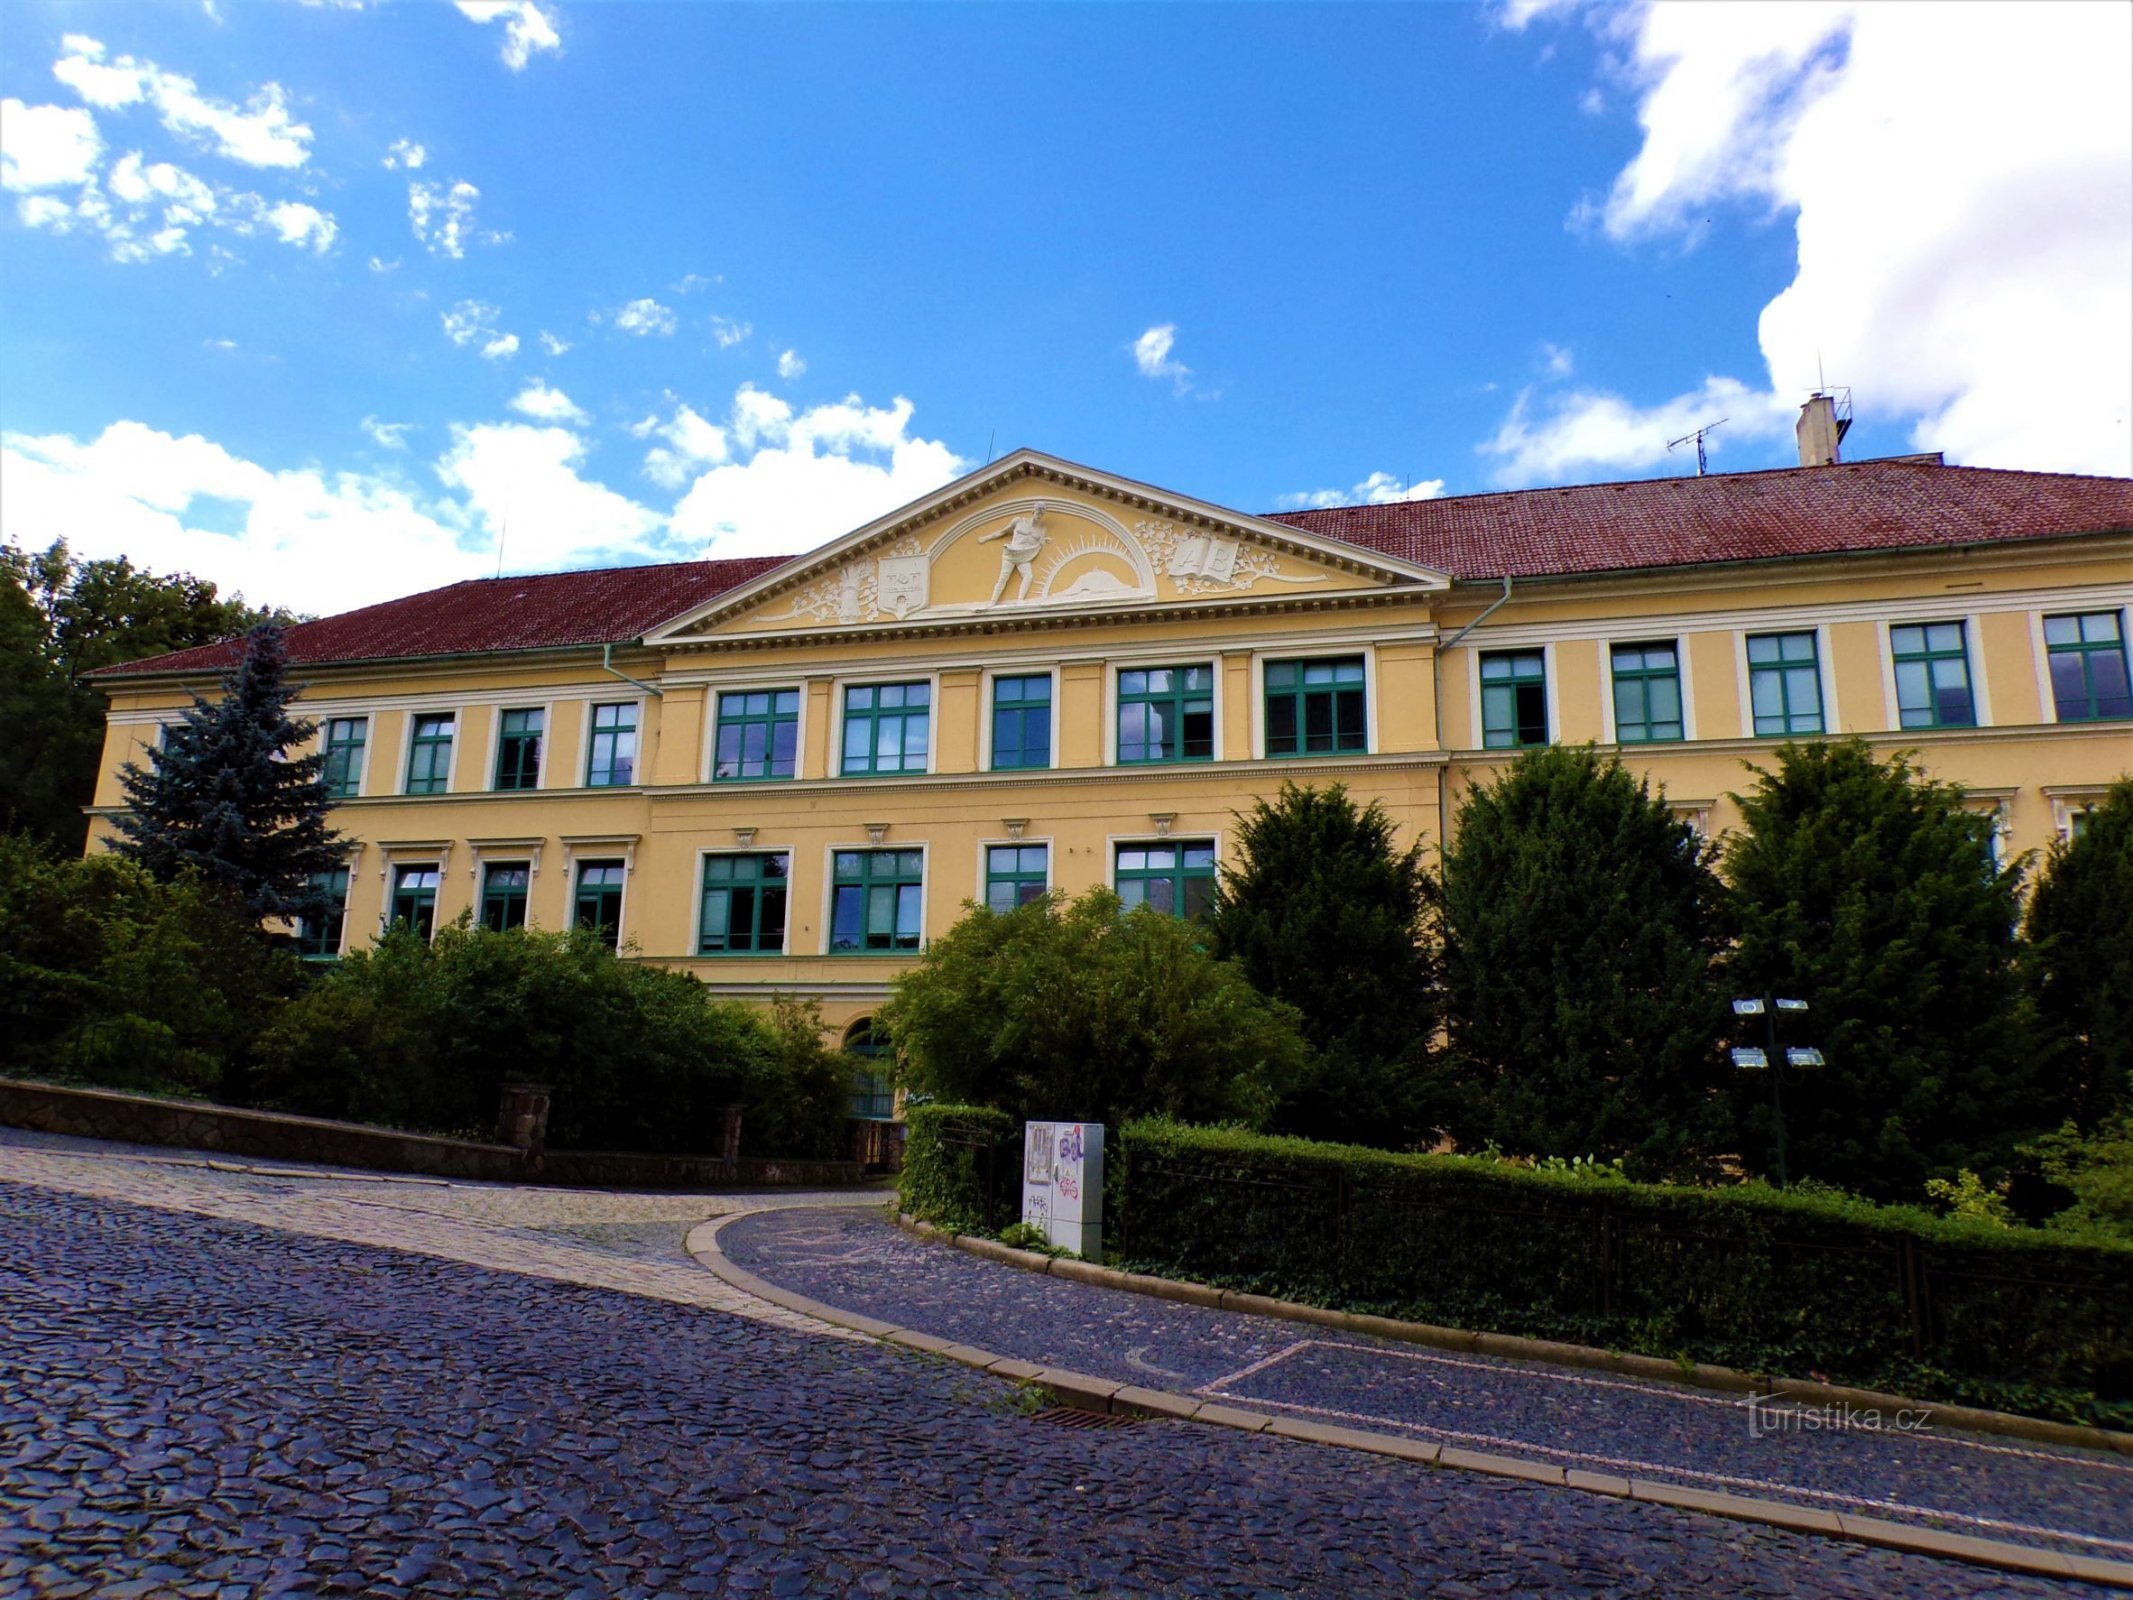 Gimnaziu (Roudnice nad Labem, 9.7.2021 iulie XNUMX)